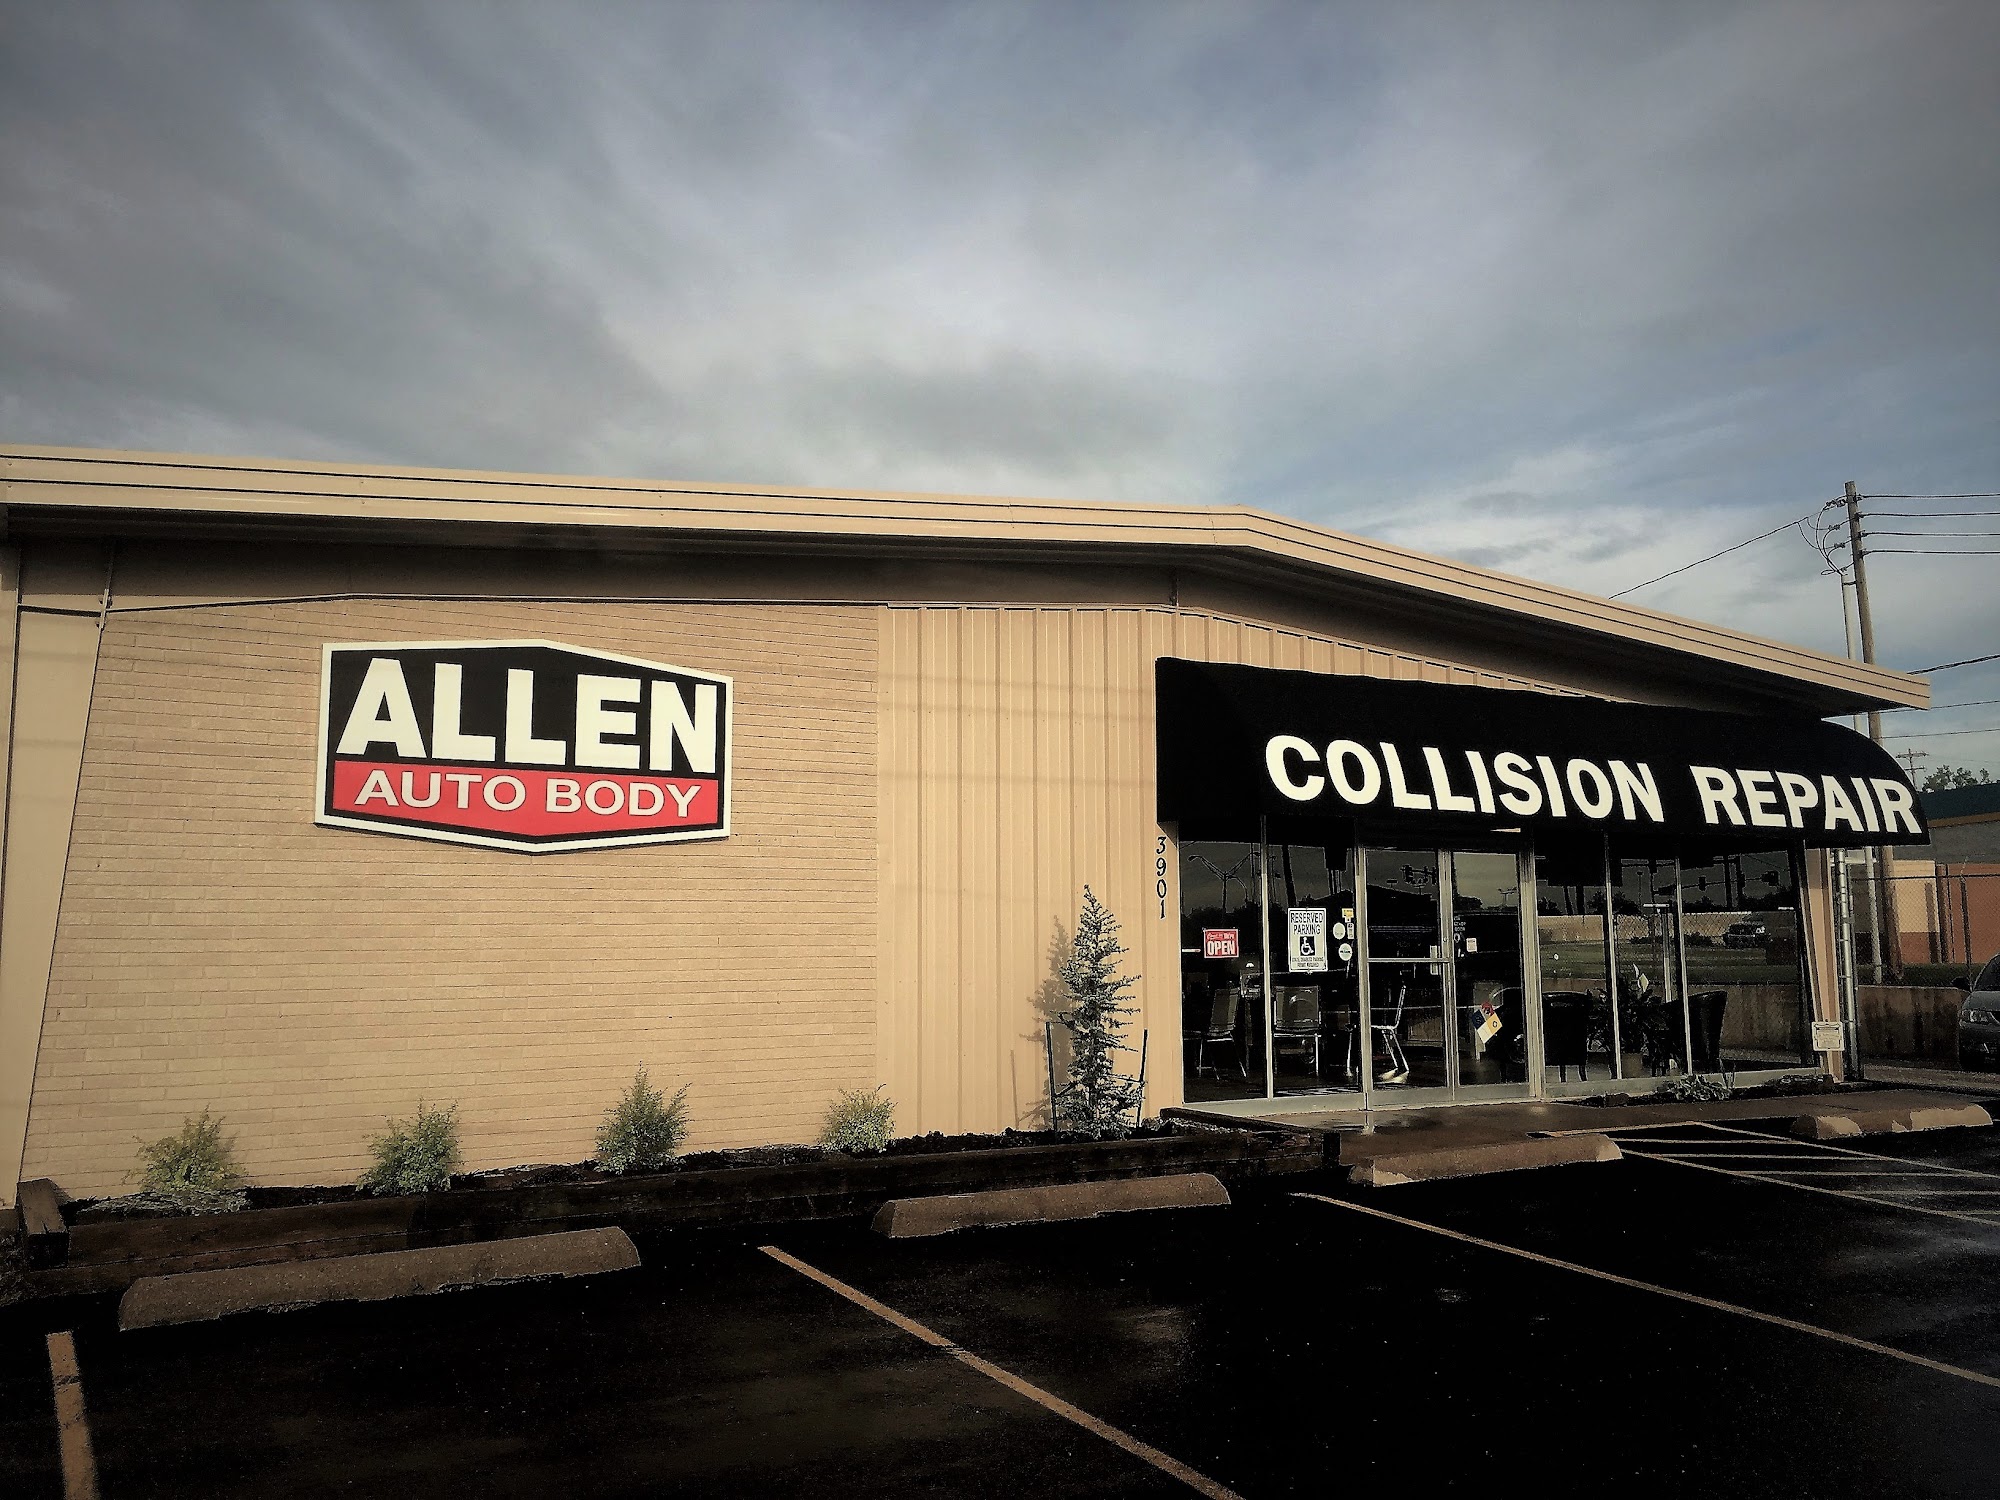 Allen Auto Body - Collision Repair in Oklahoma City